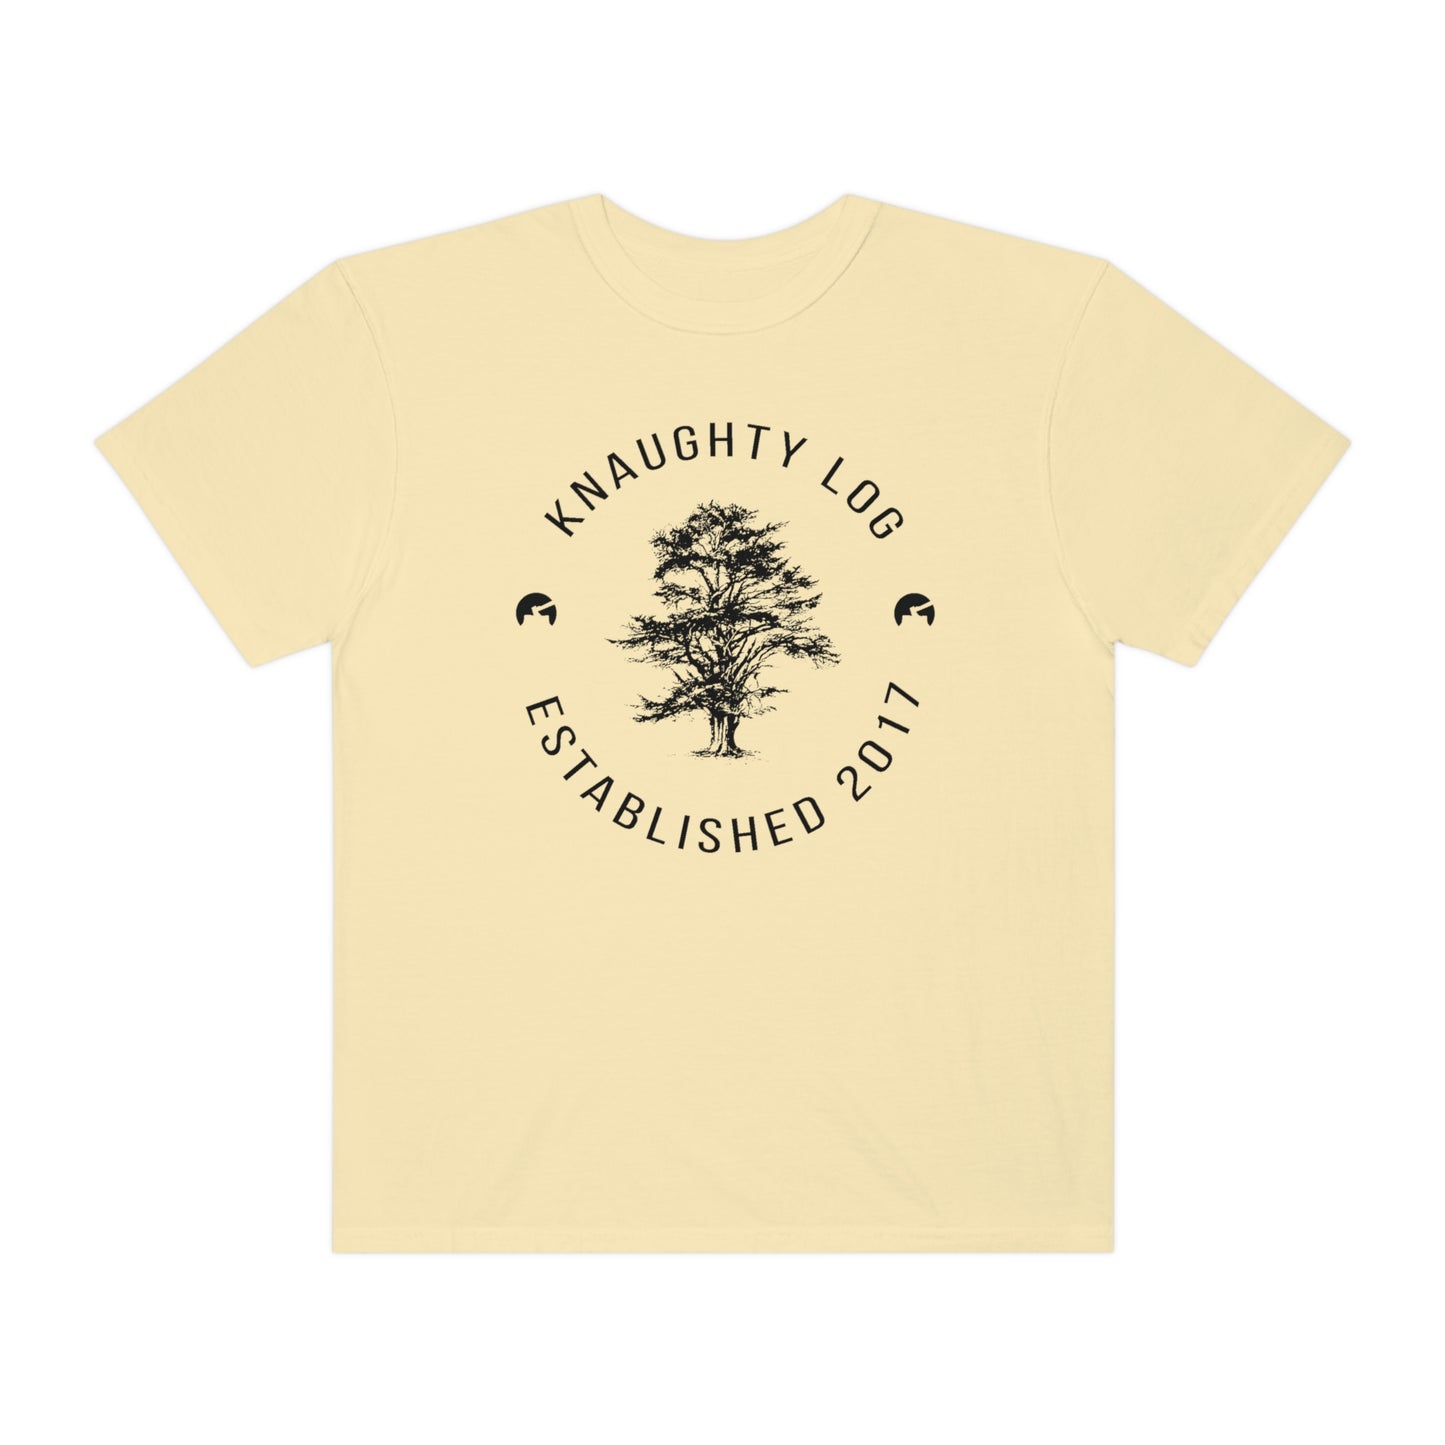 Knaughty Log Tree Graphic T-Shirt